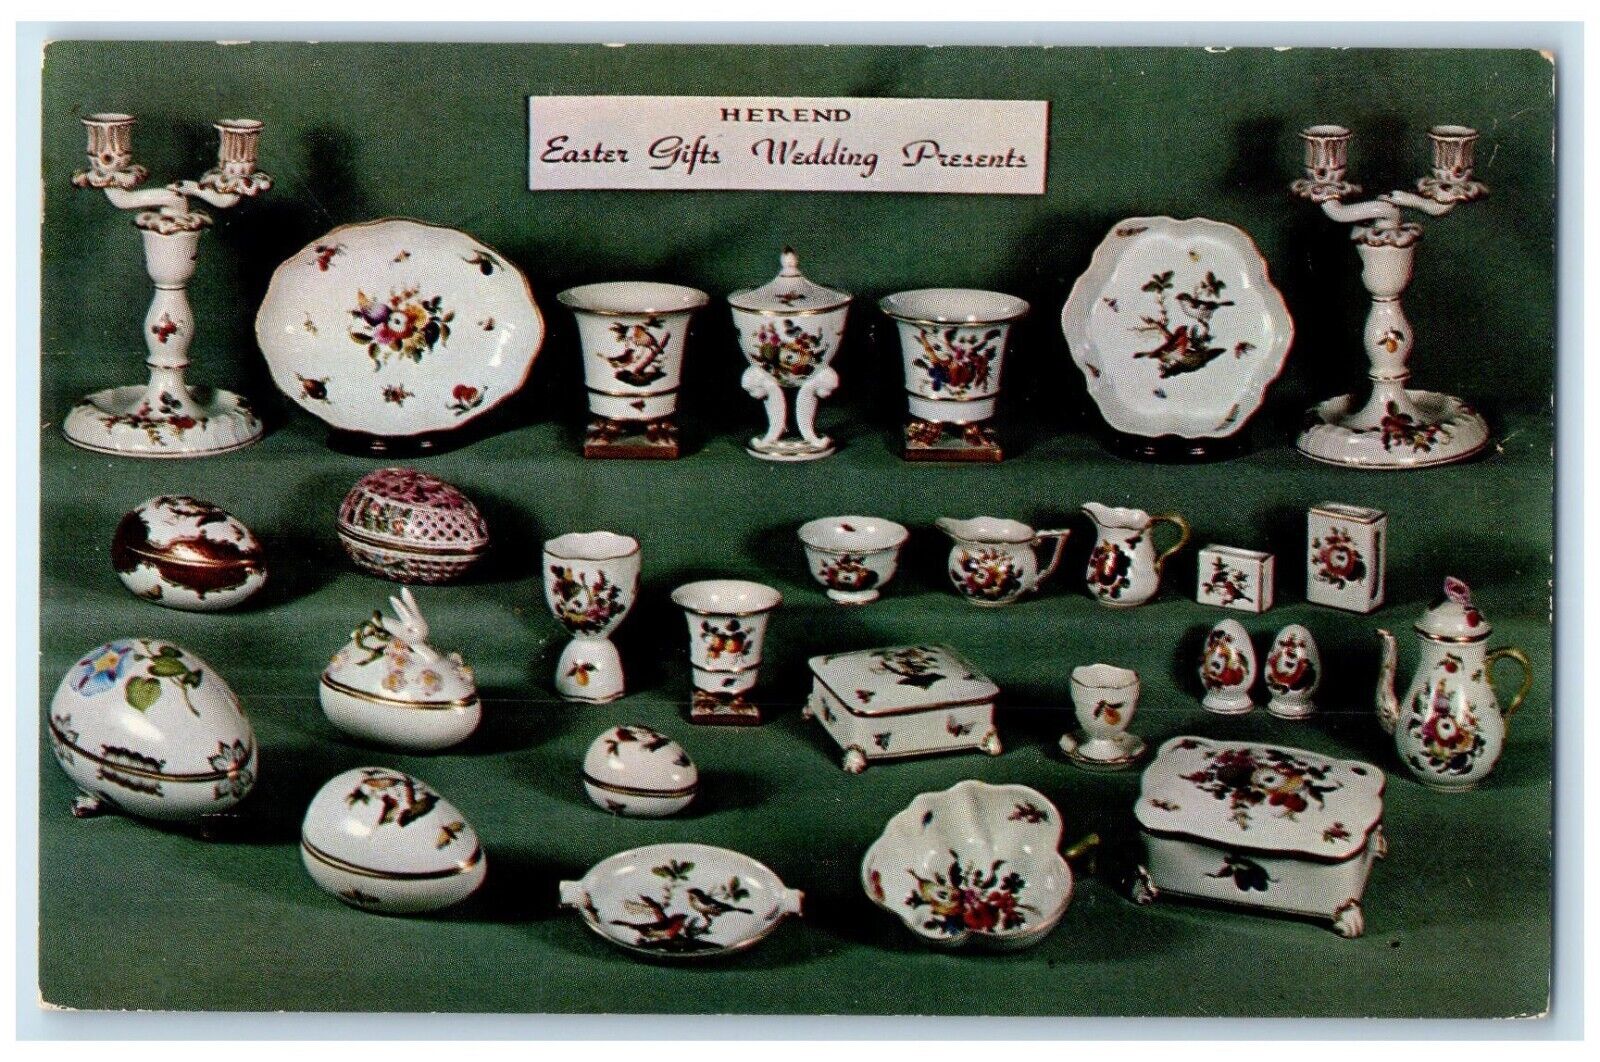 c1960 Herend Porcelain Gift Shop Ivy Shop Charlottesville Virginia VA Postcard